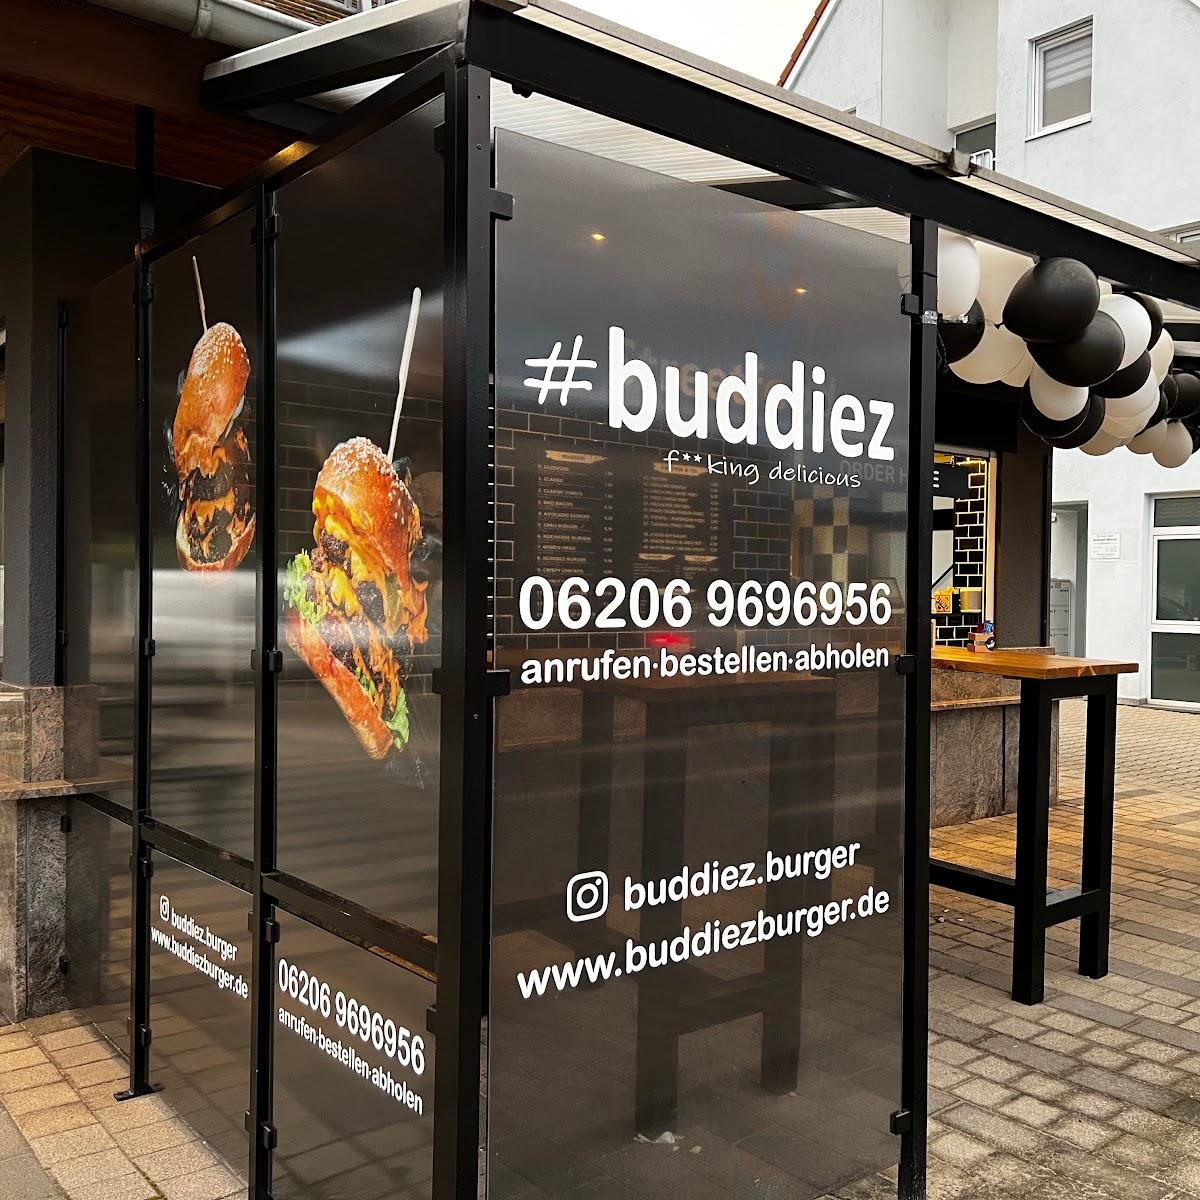 Restaurant "Buddiez -" in Lampertheim